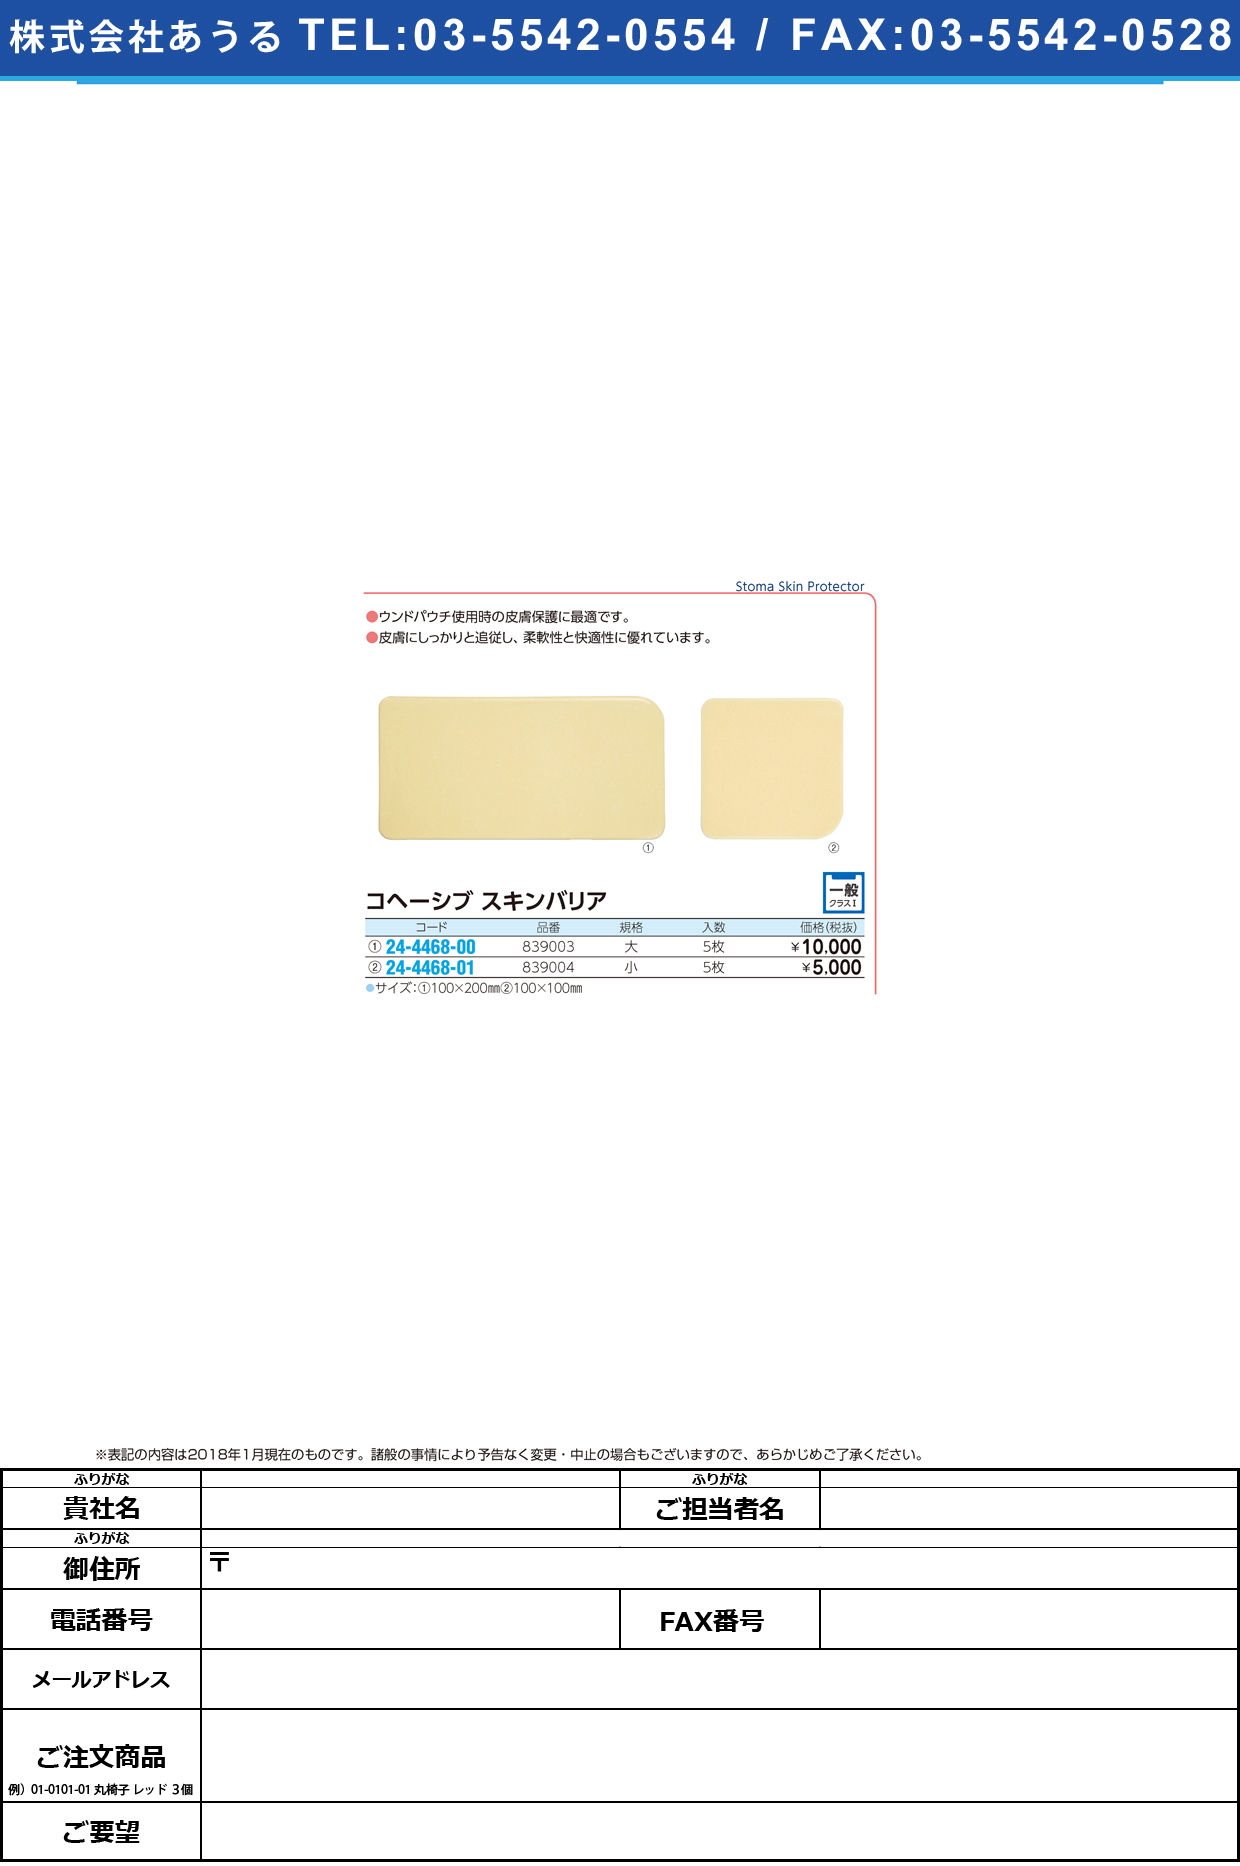 (24-4468-01)コヘーシブスキンバリア 839004(ｼｮｳ)5ﾏｲ ｺﾍｰｼﾌﾞｽｷﾝﾊﾞﾘｱ【1箱単位】【2018年カタログ商品】